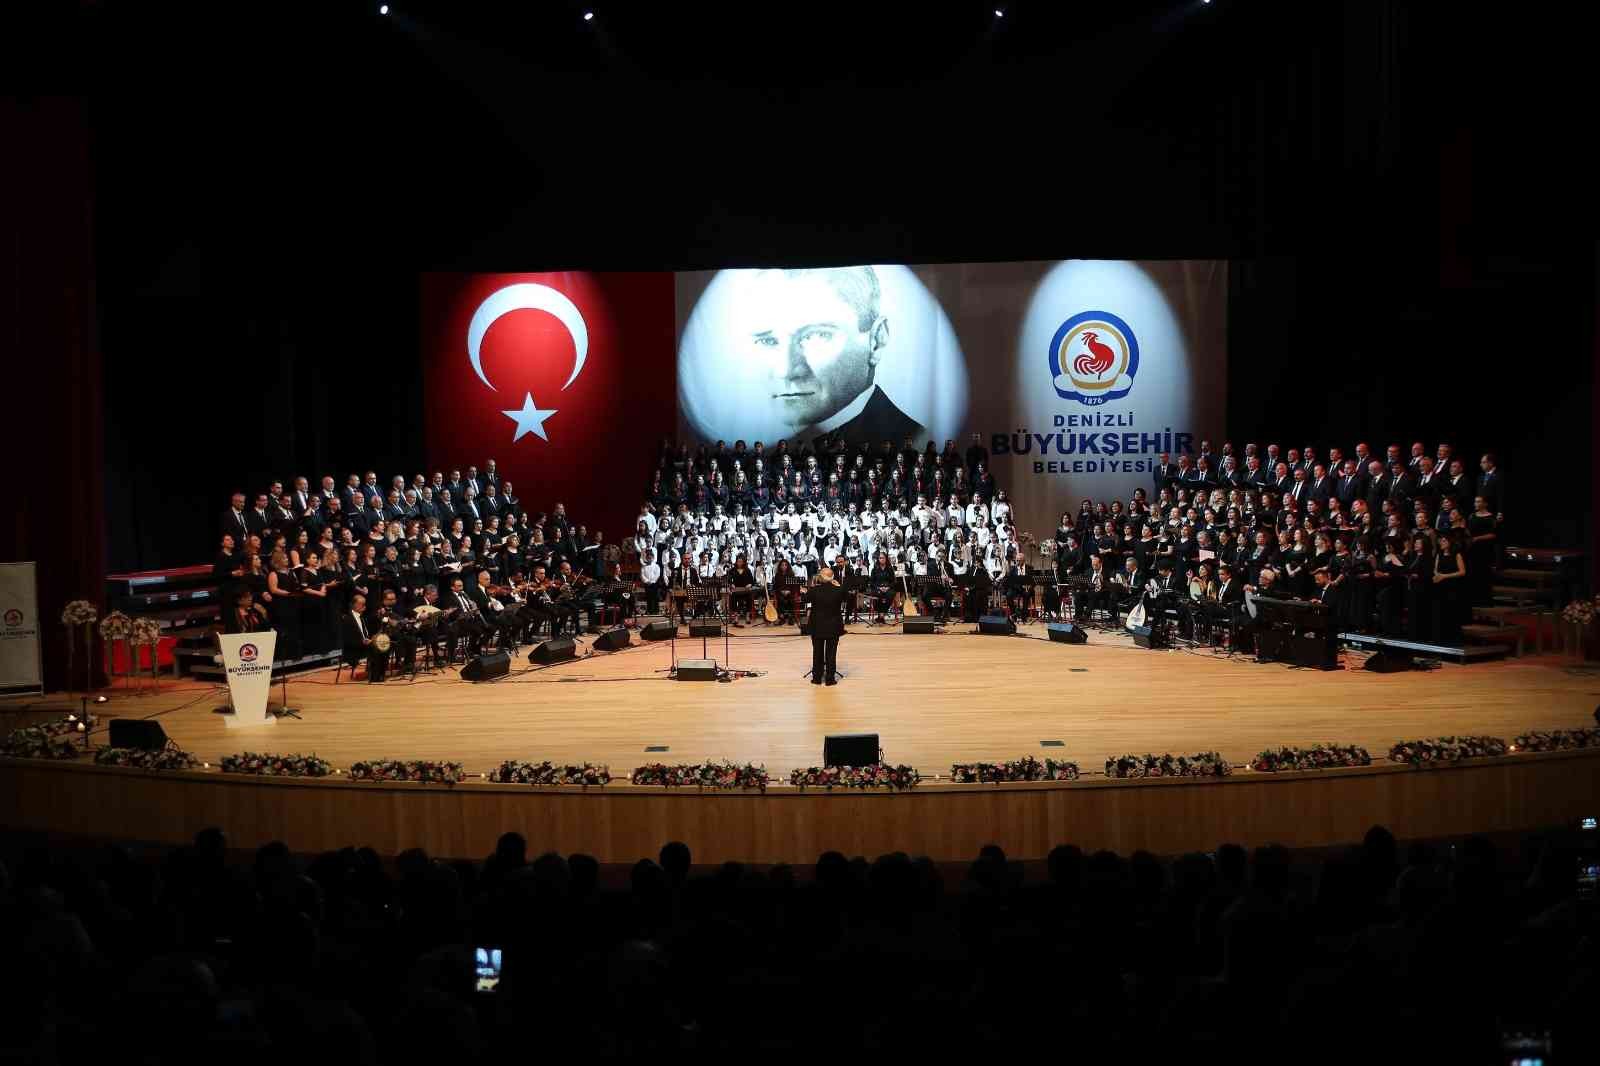 100 kişilik koro Atatürk’ün sevdiği şarkıları seslendirecek #denizli